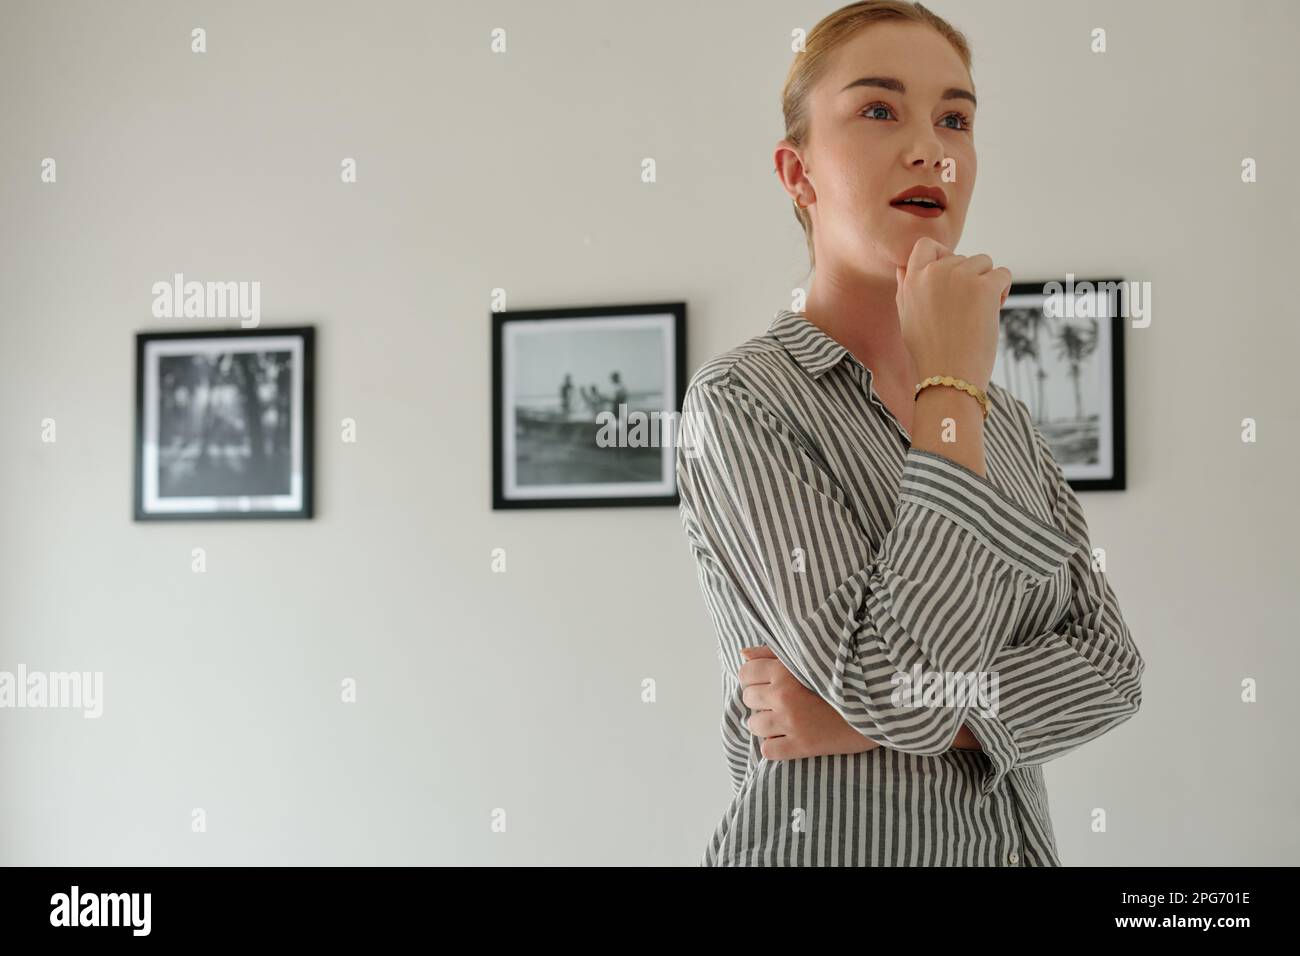 Jeune femme en vêtements décontractés regardant des œuvres d'art avec attention tout en se tenant devant l'appareil photo contre le mur avec une rangée de photos Banque D'Images